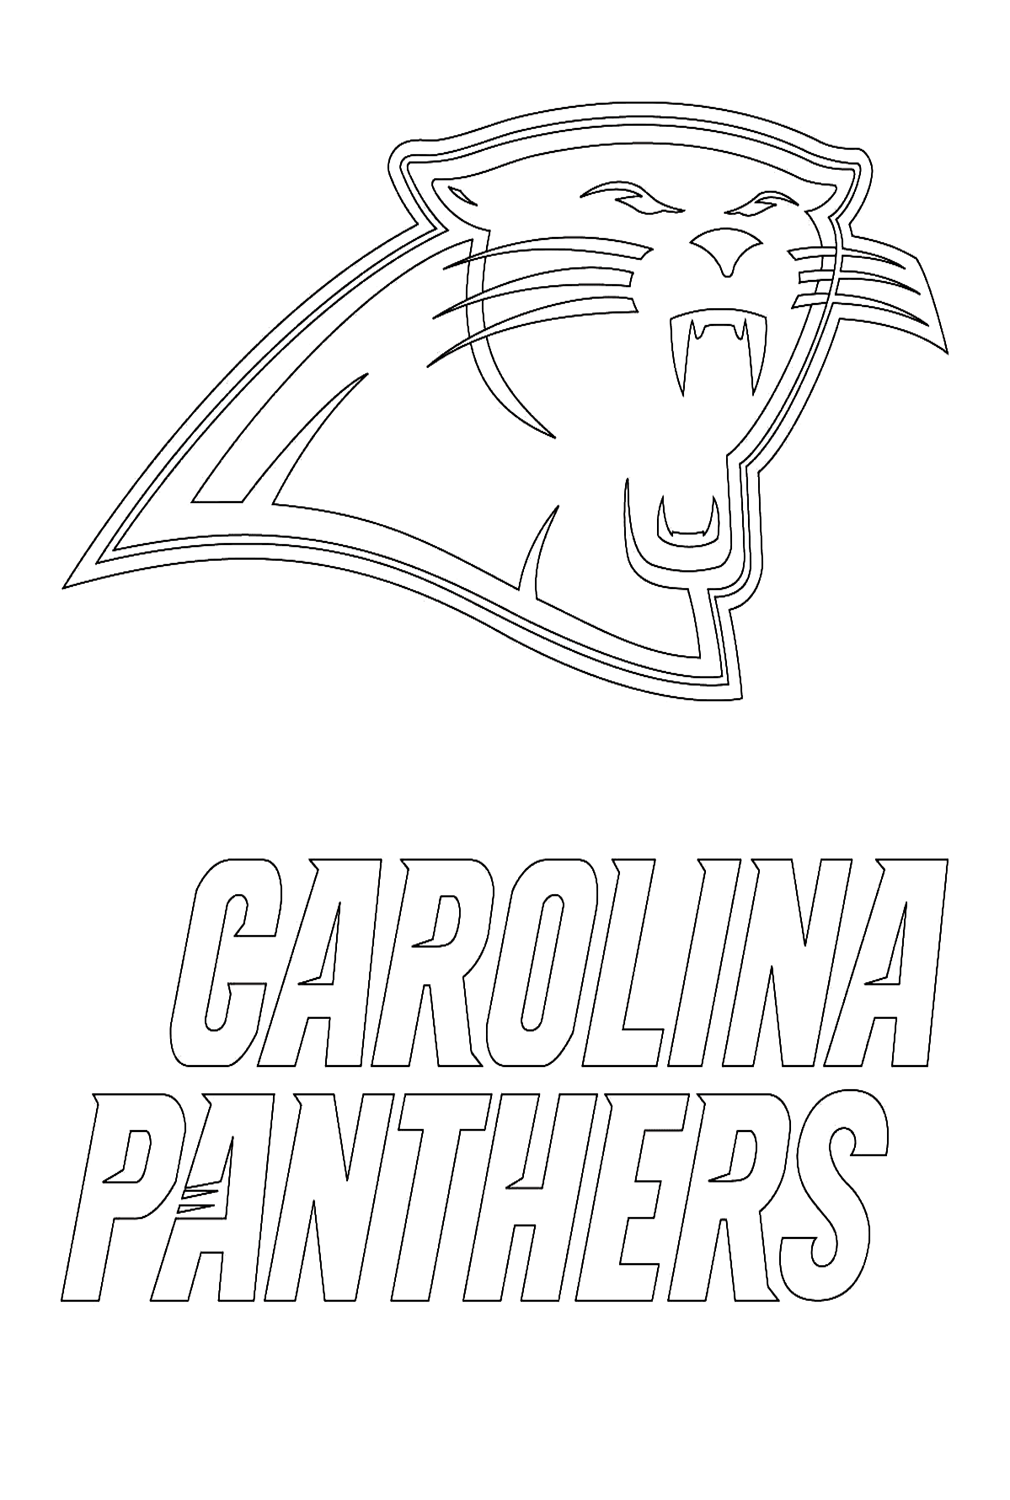 Logo des Panthers de la Caroline de la NFL